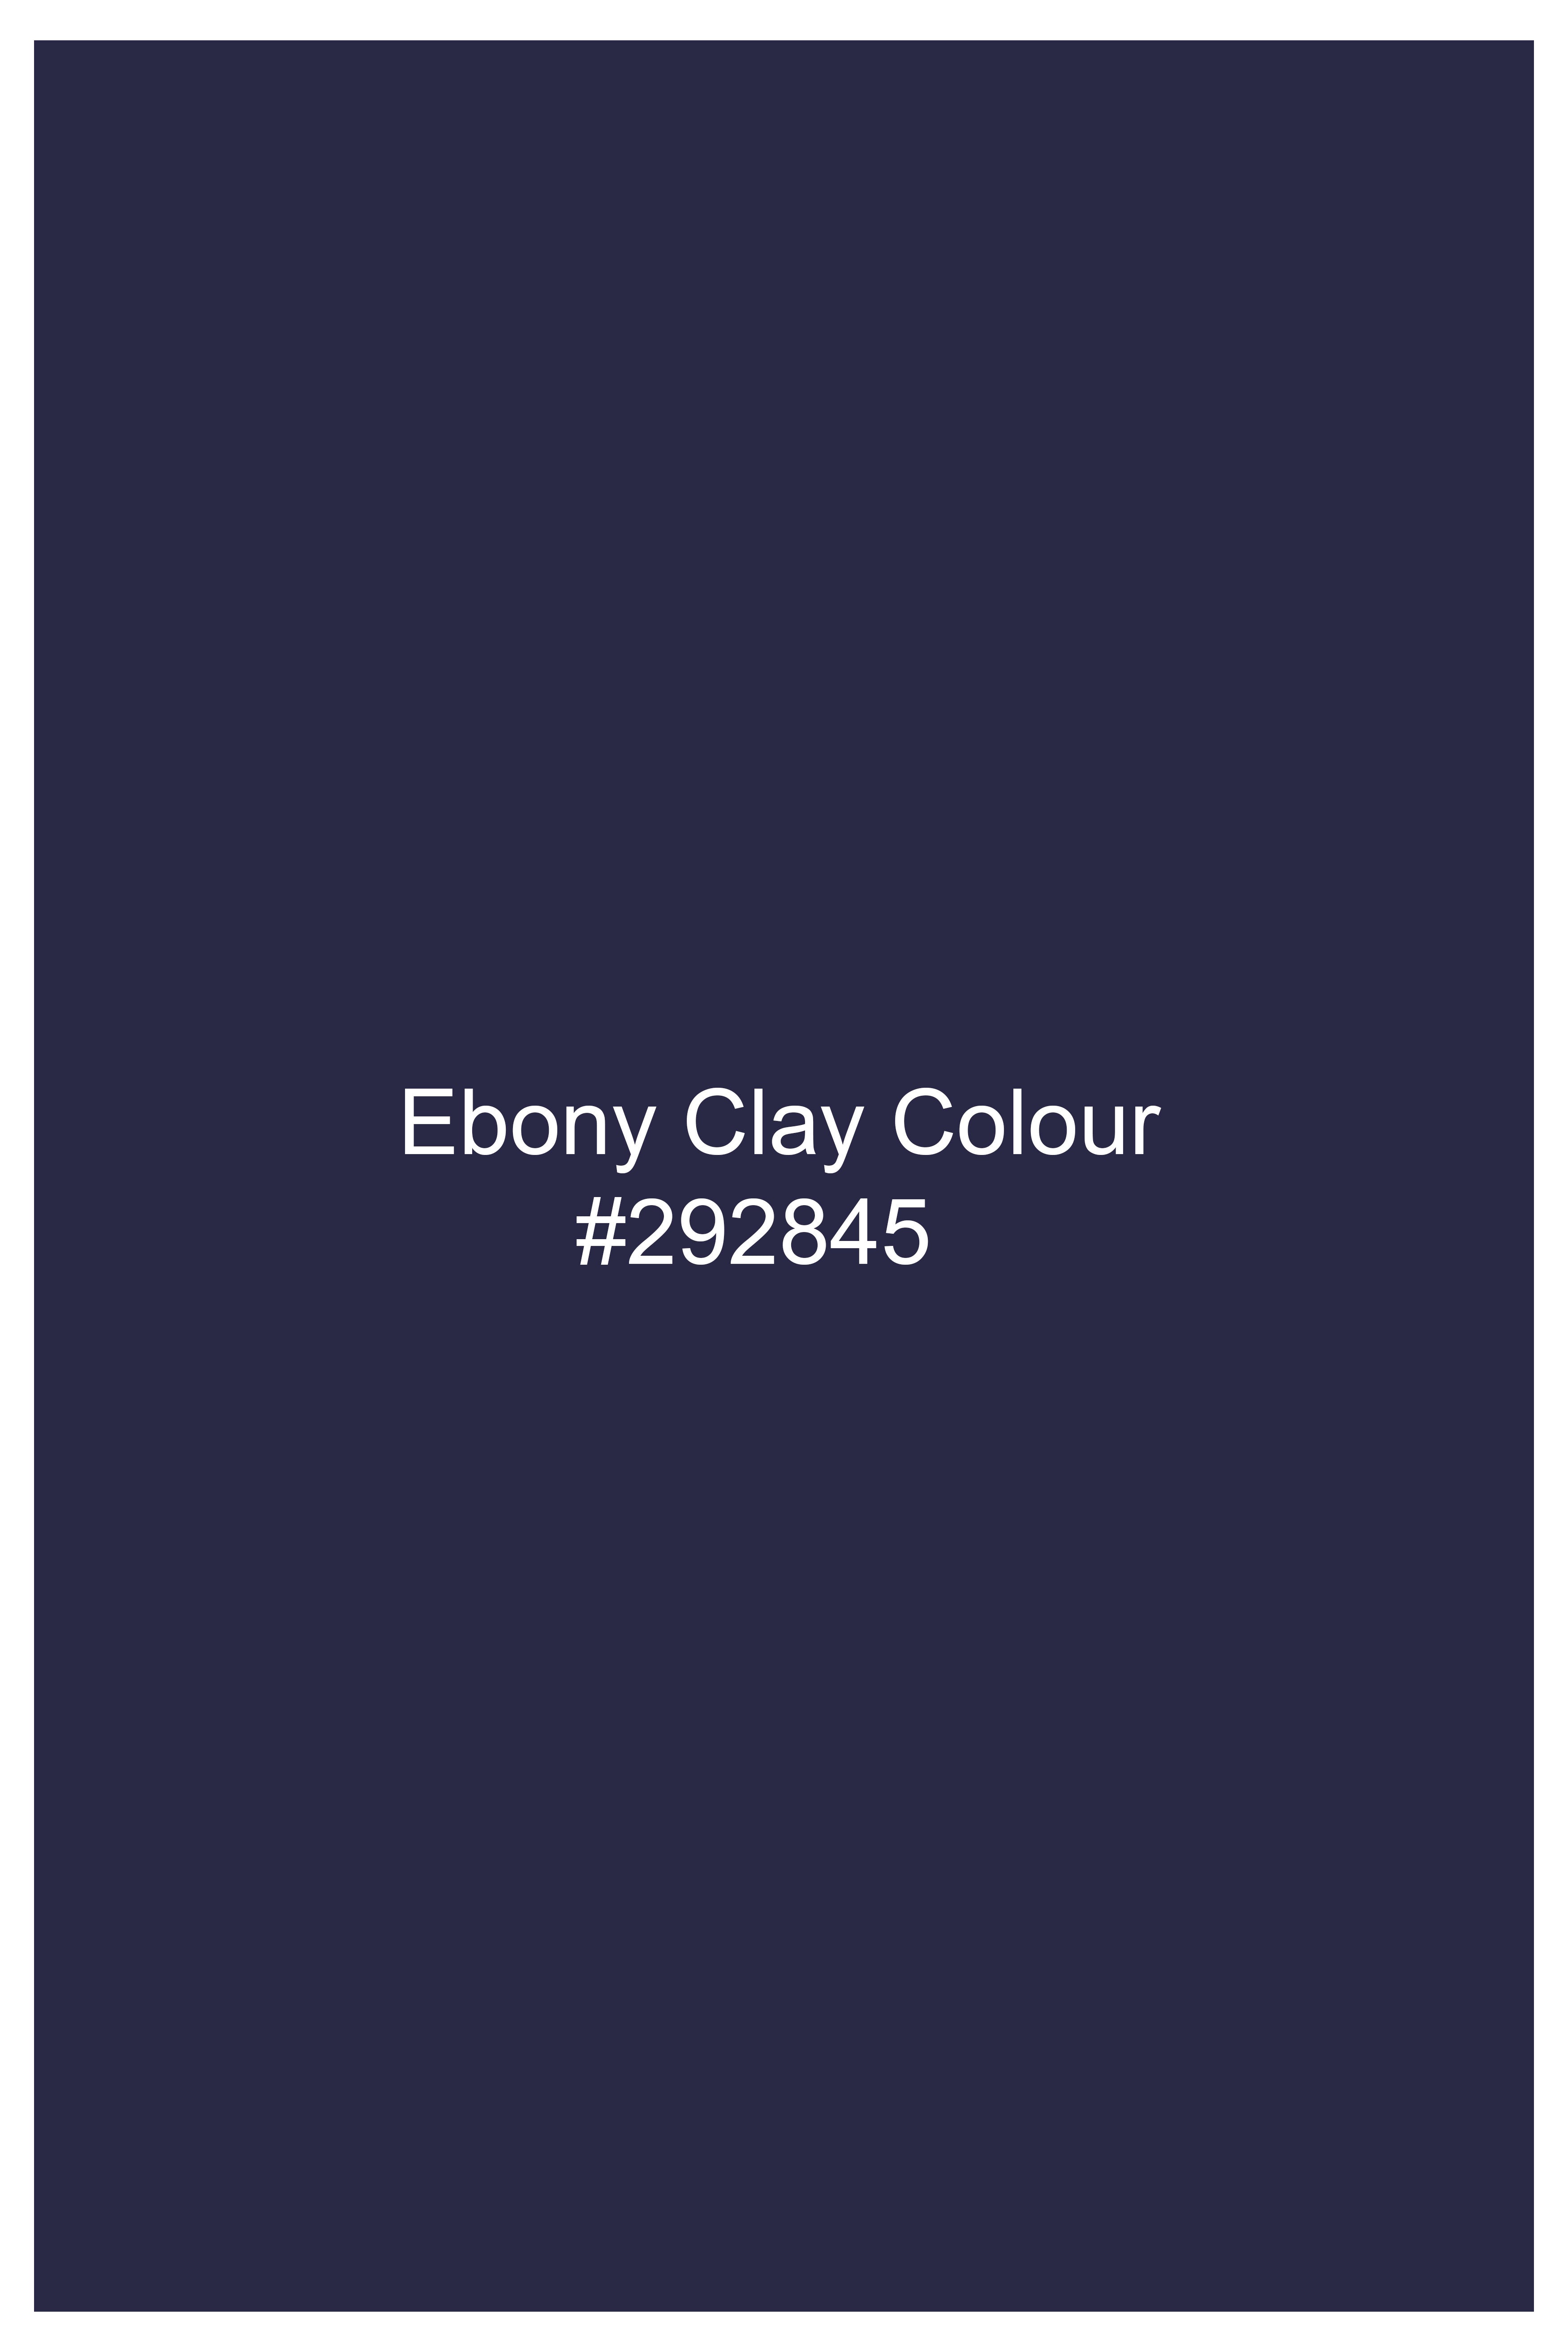 Ebony Clay Blue Wool Rich Waistcoat V3062-36, V3062-38, V3062-40, V3062-42, V3062-44, V3062-46, V3062-48, V3062-50, V3062-62, V3062-54, V3062-56, V3062-58, V3062-60